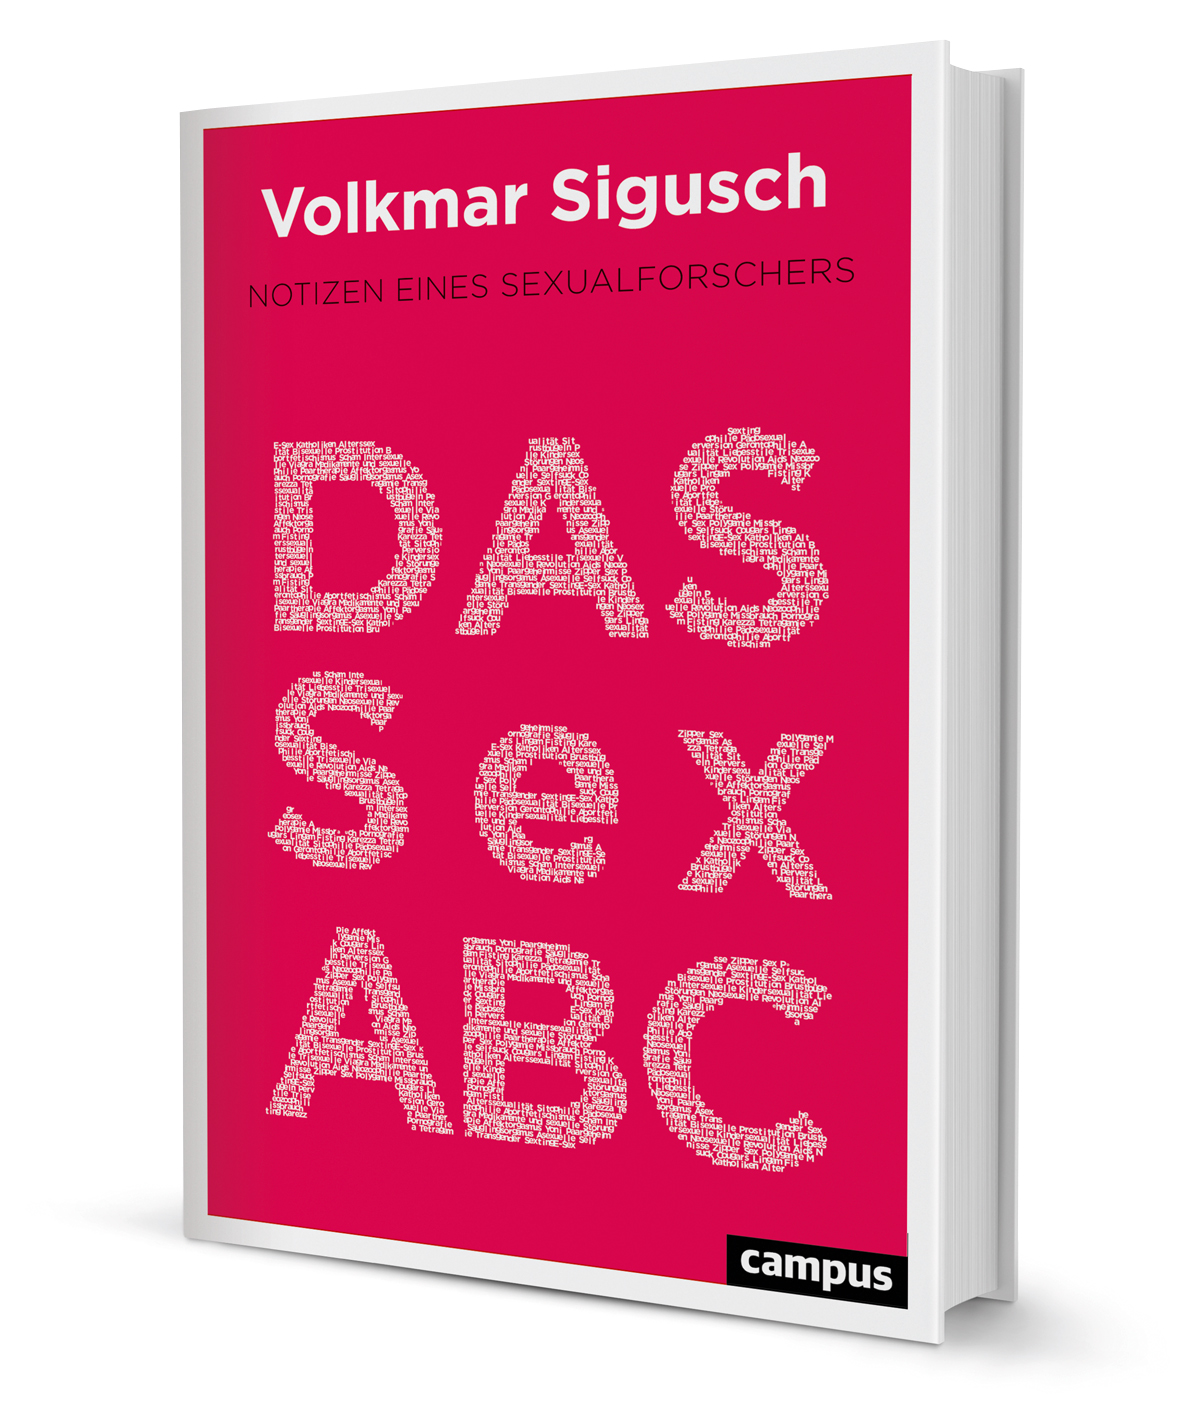 Das Sex Abc Ein Buch Von Volkmar Sigusch Campus Verlag 8475